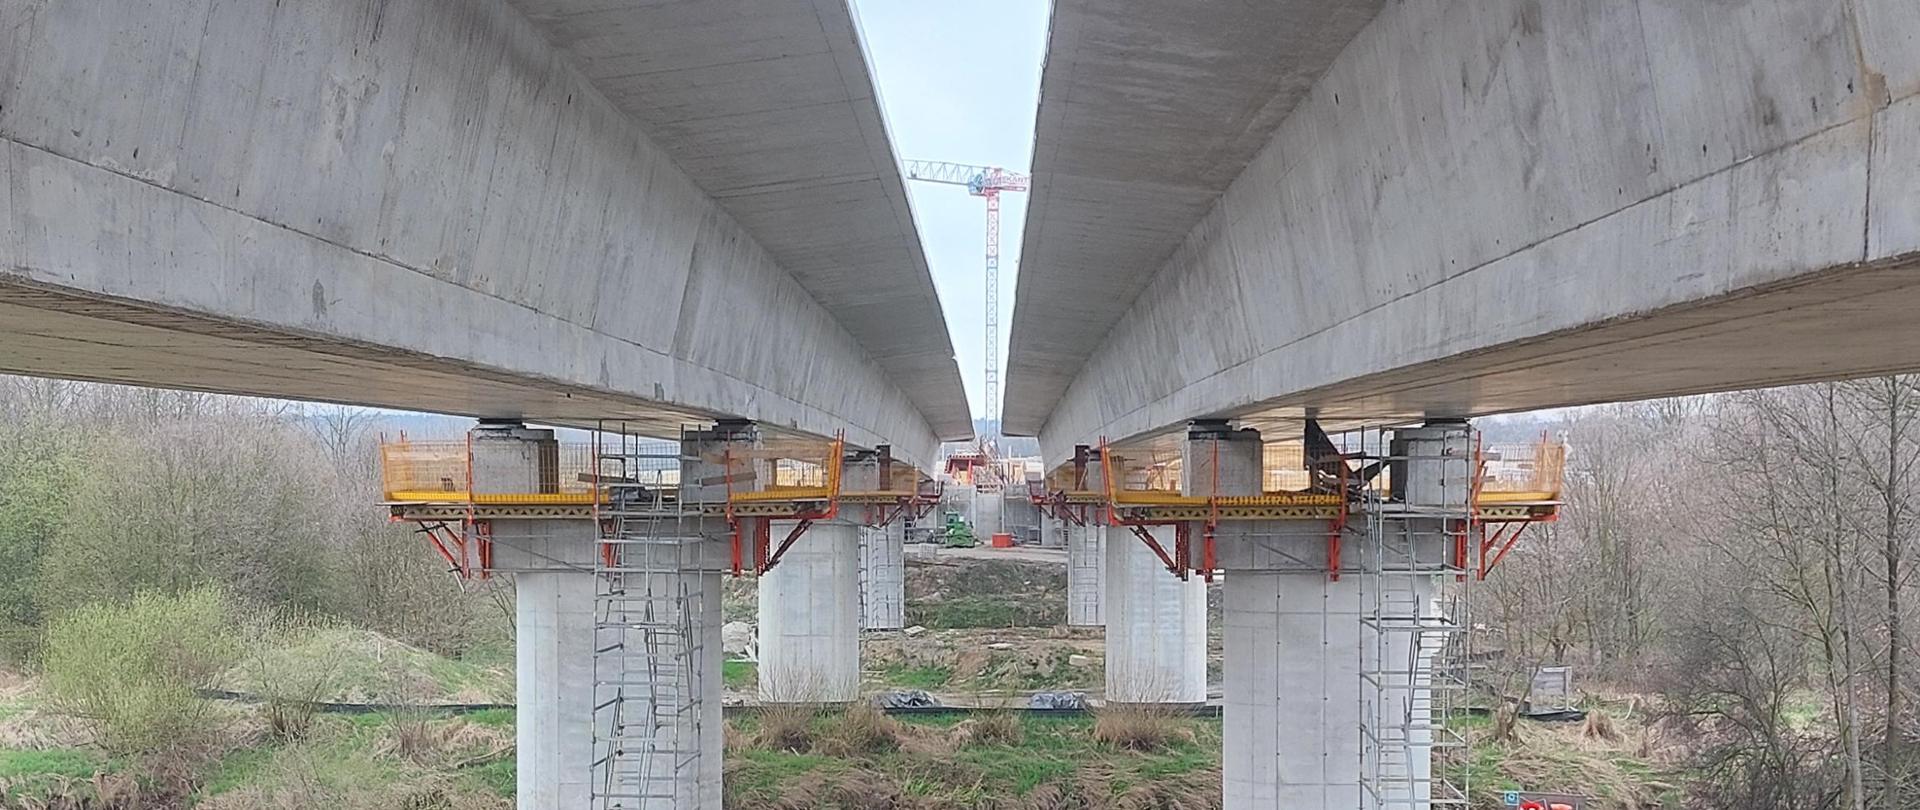 Konstrukcja mostu nad Wisłą, budowanego w ramach obwodnicy Oświęcimia, połączyła oba brzegi rzeki. Przeprawa ma 432 m (dla jezdni lewej) oraz 420 m (dla jezdni prawej) długości i leży na terenie gmin Bojszowy w województwie śląskim i Oświęcim w Małopolsce.